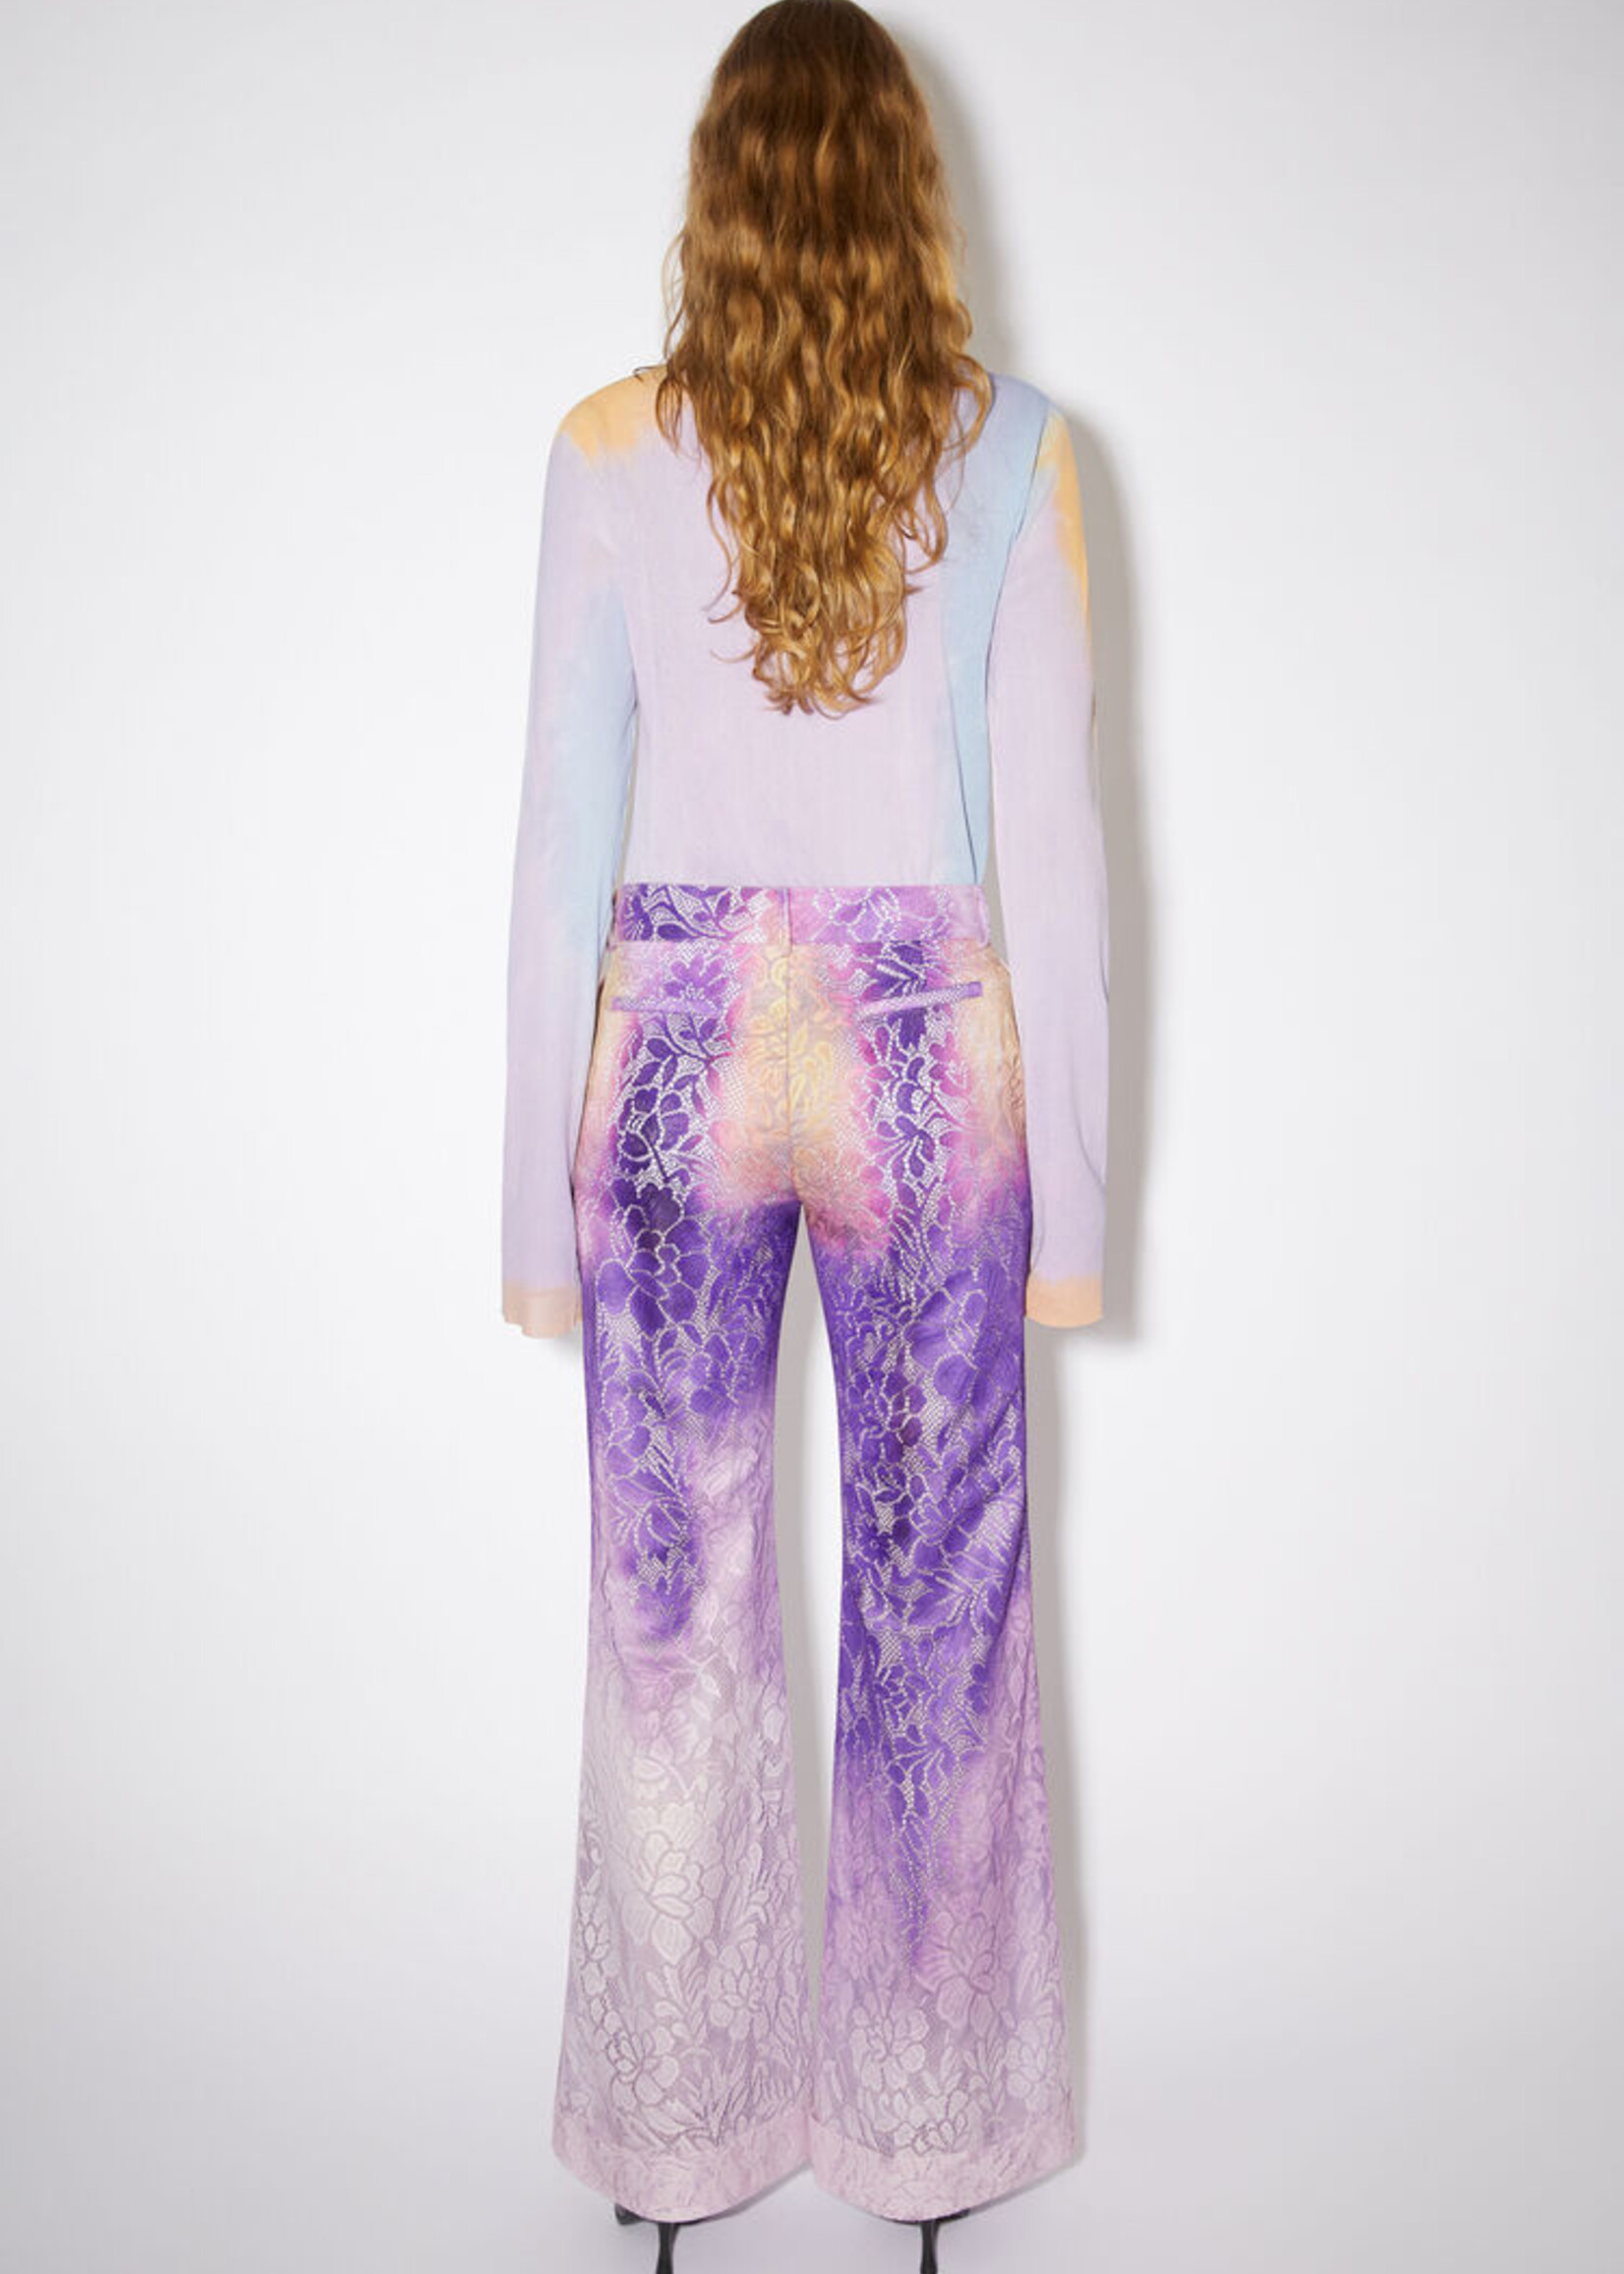 Acne Studios - Tailored wrap trousers - Aubergine purple